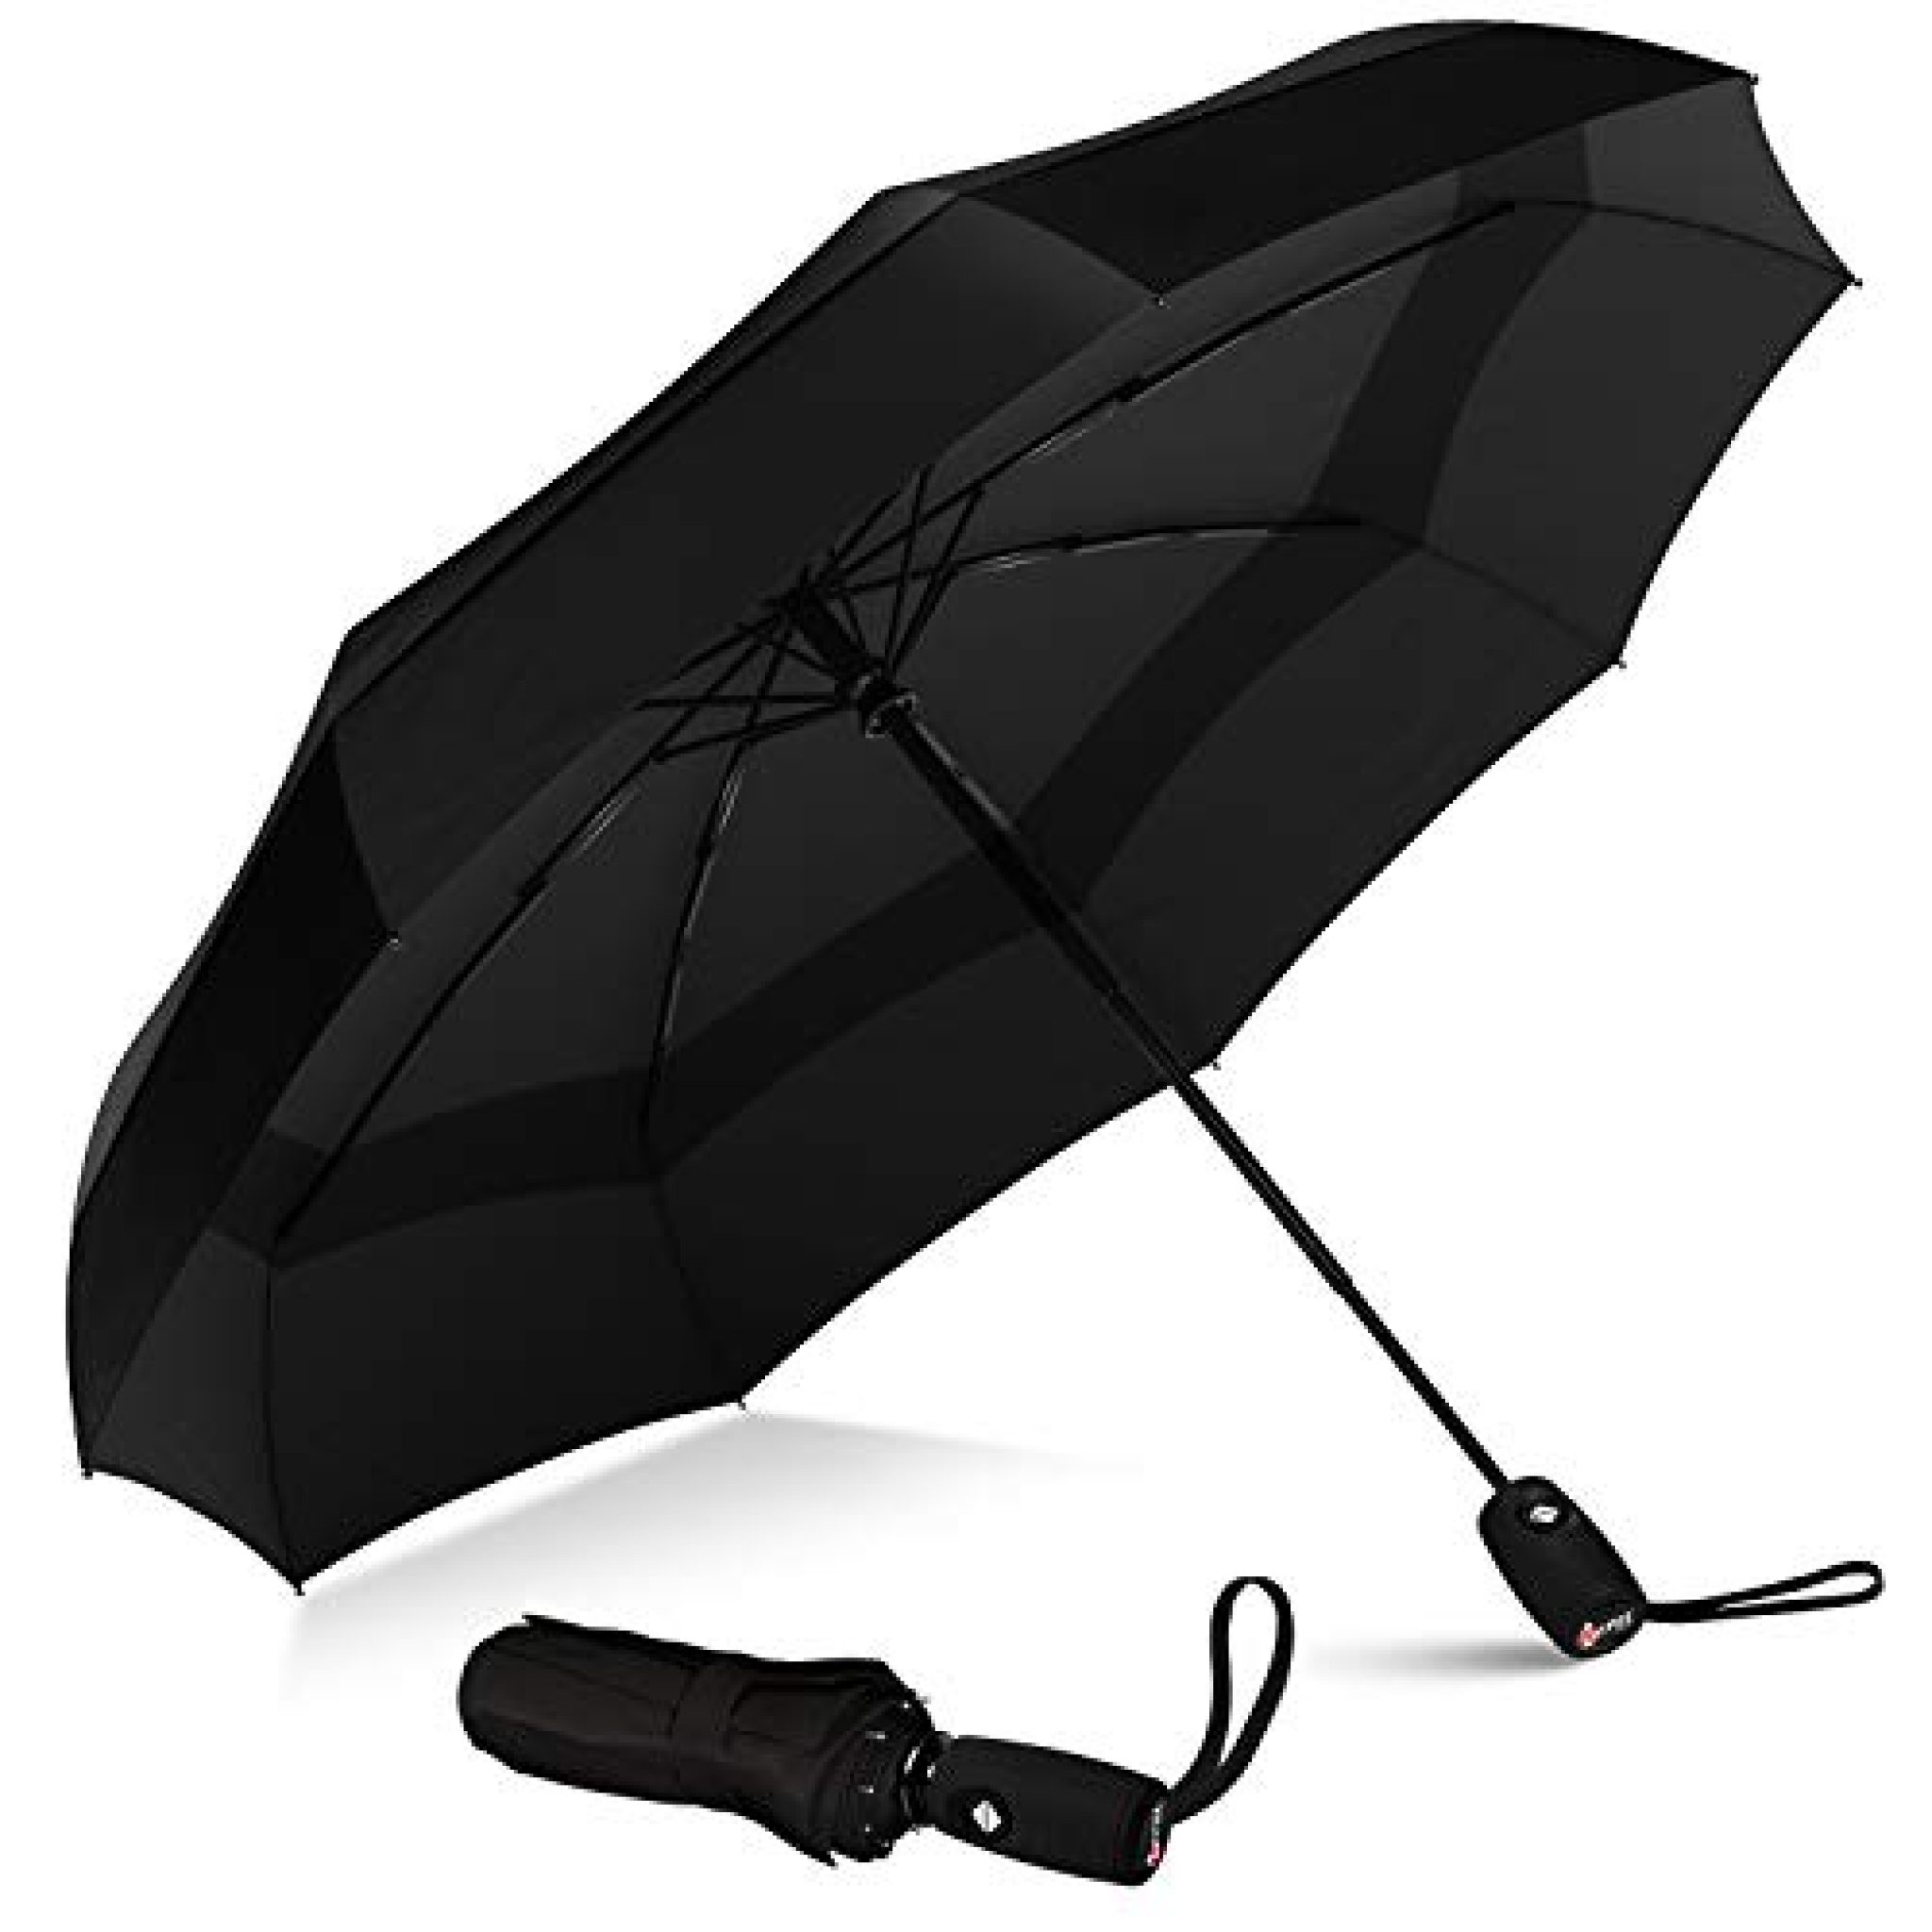 the repel windproof travel umbrella